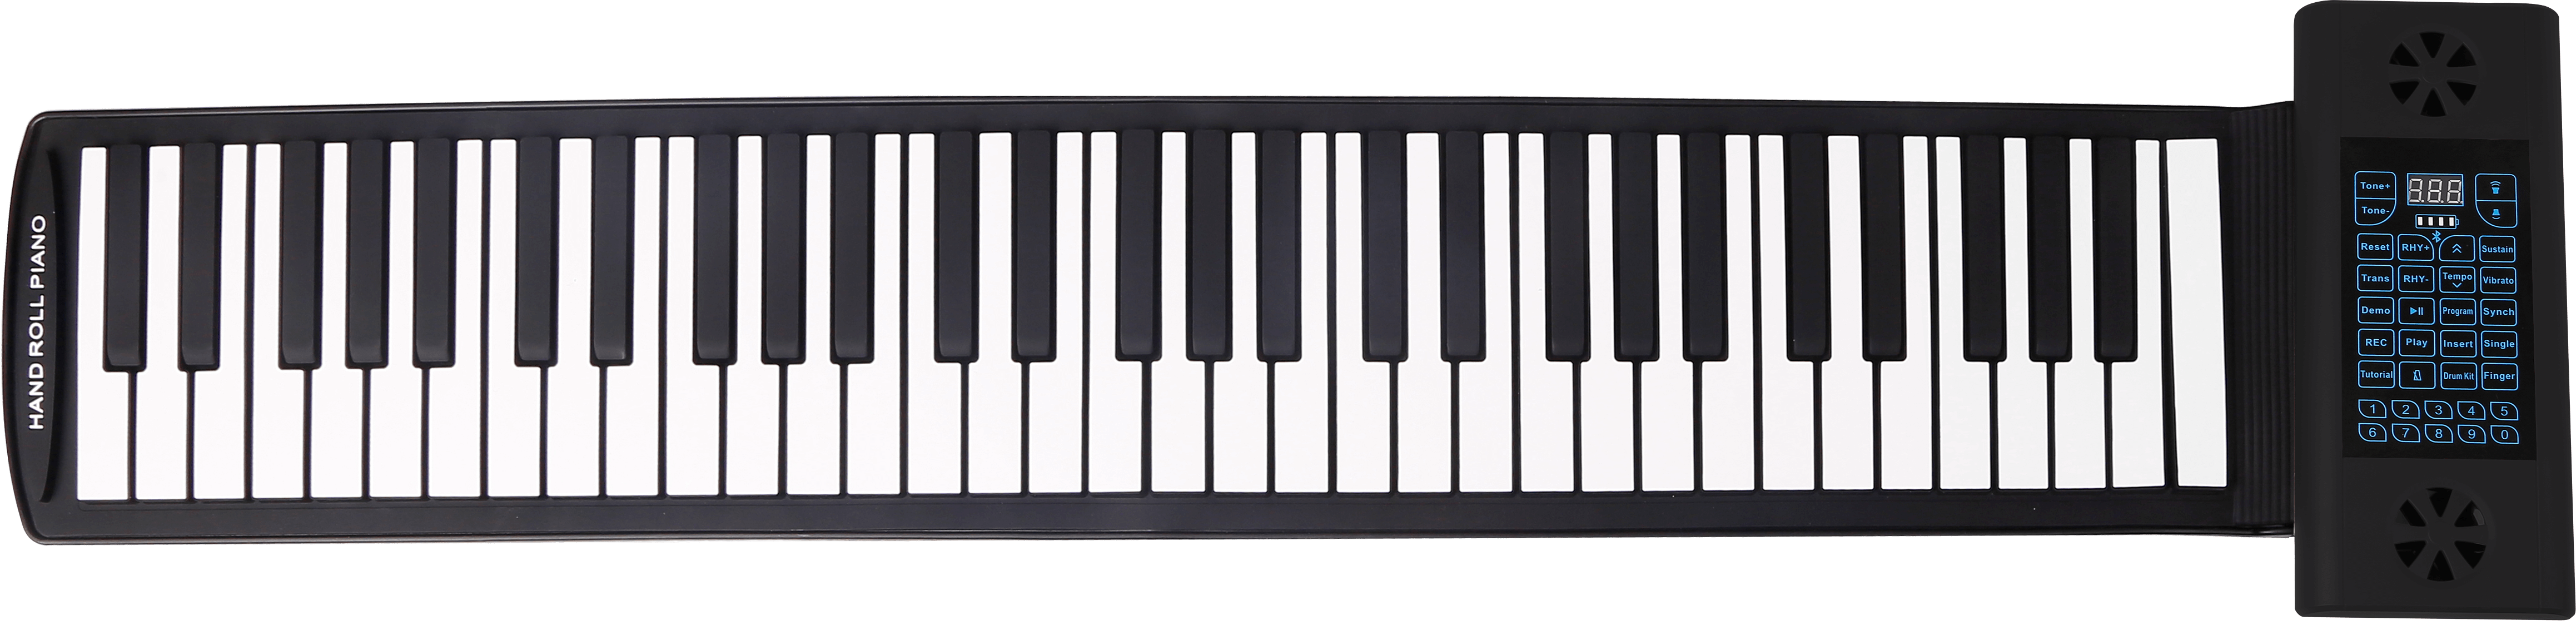 силіконовий фортепіано з 61 клавішами